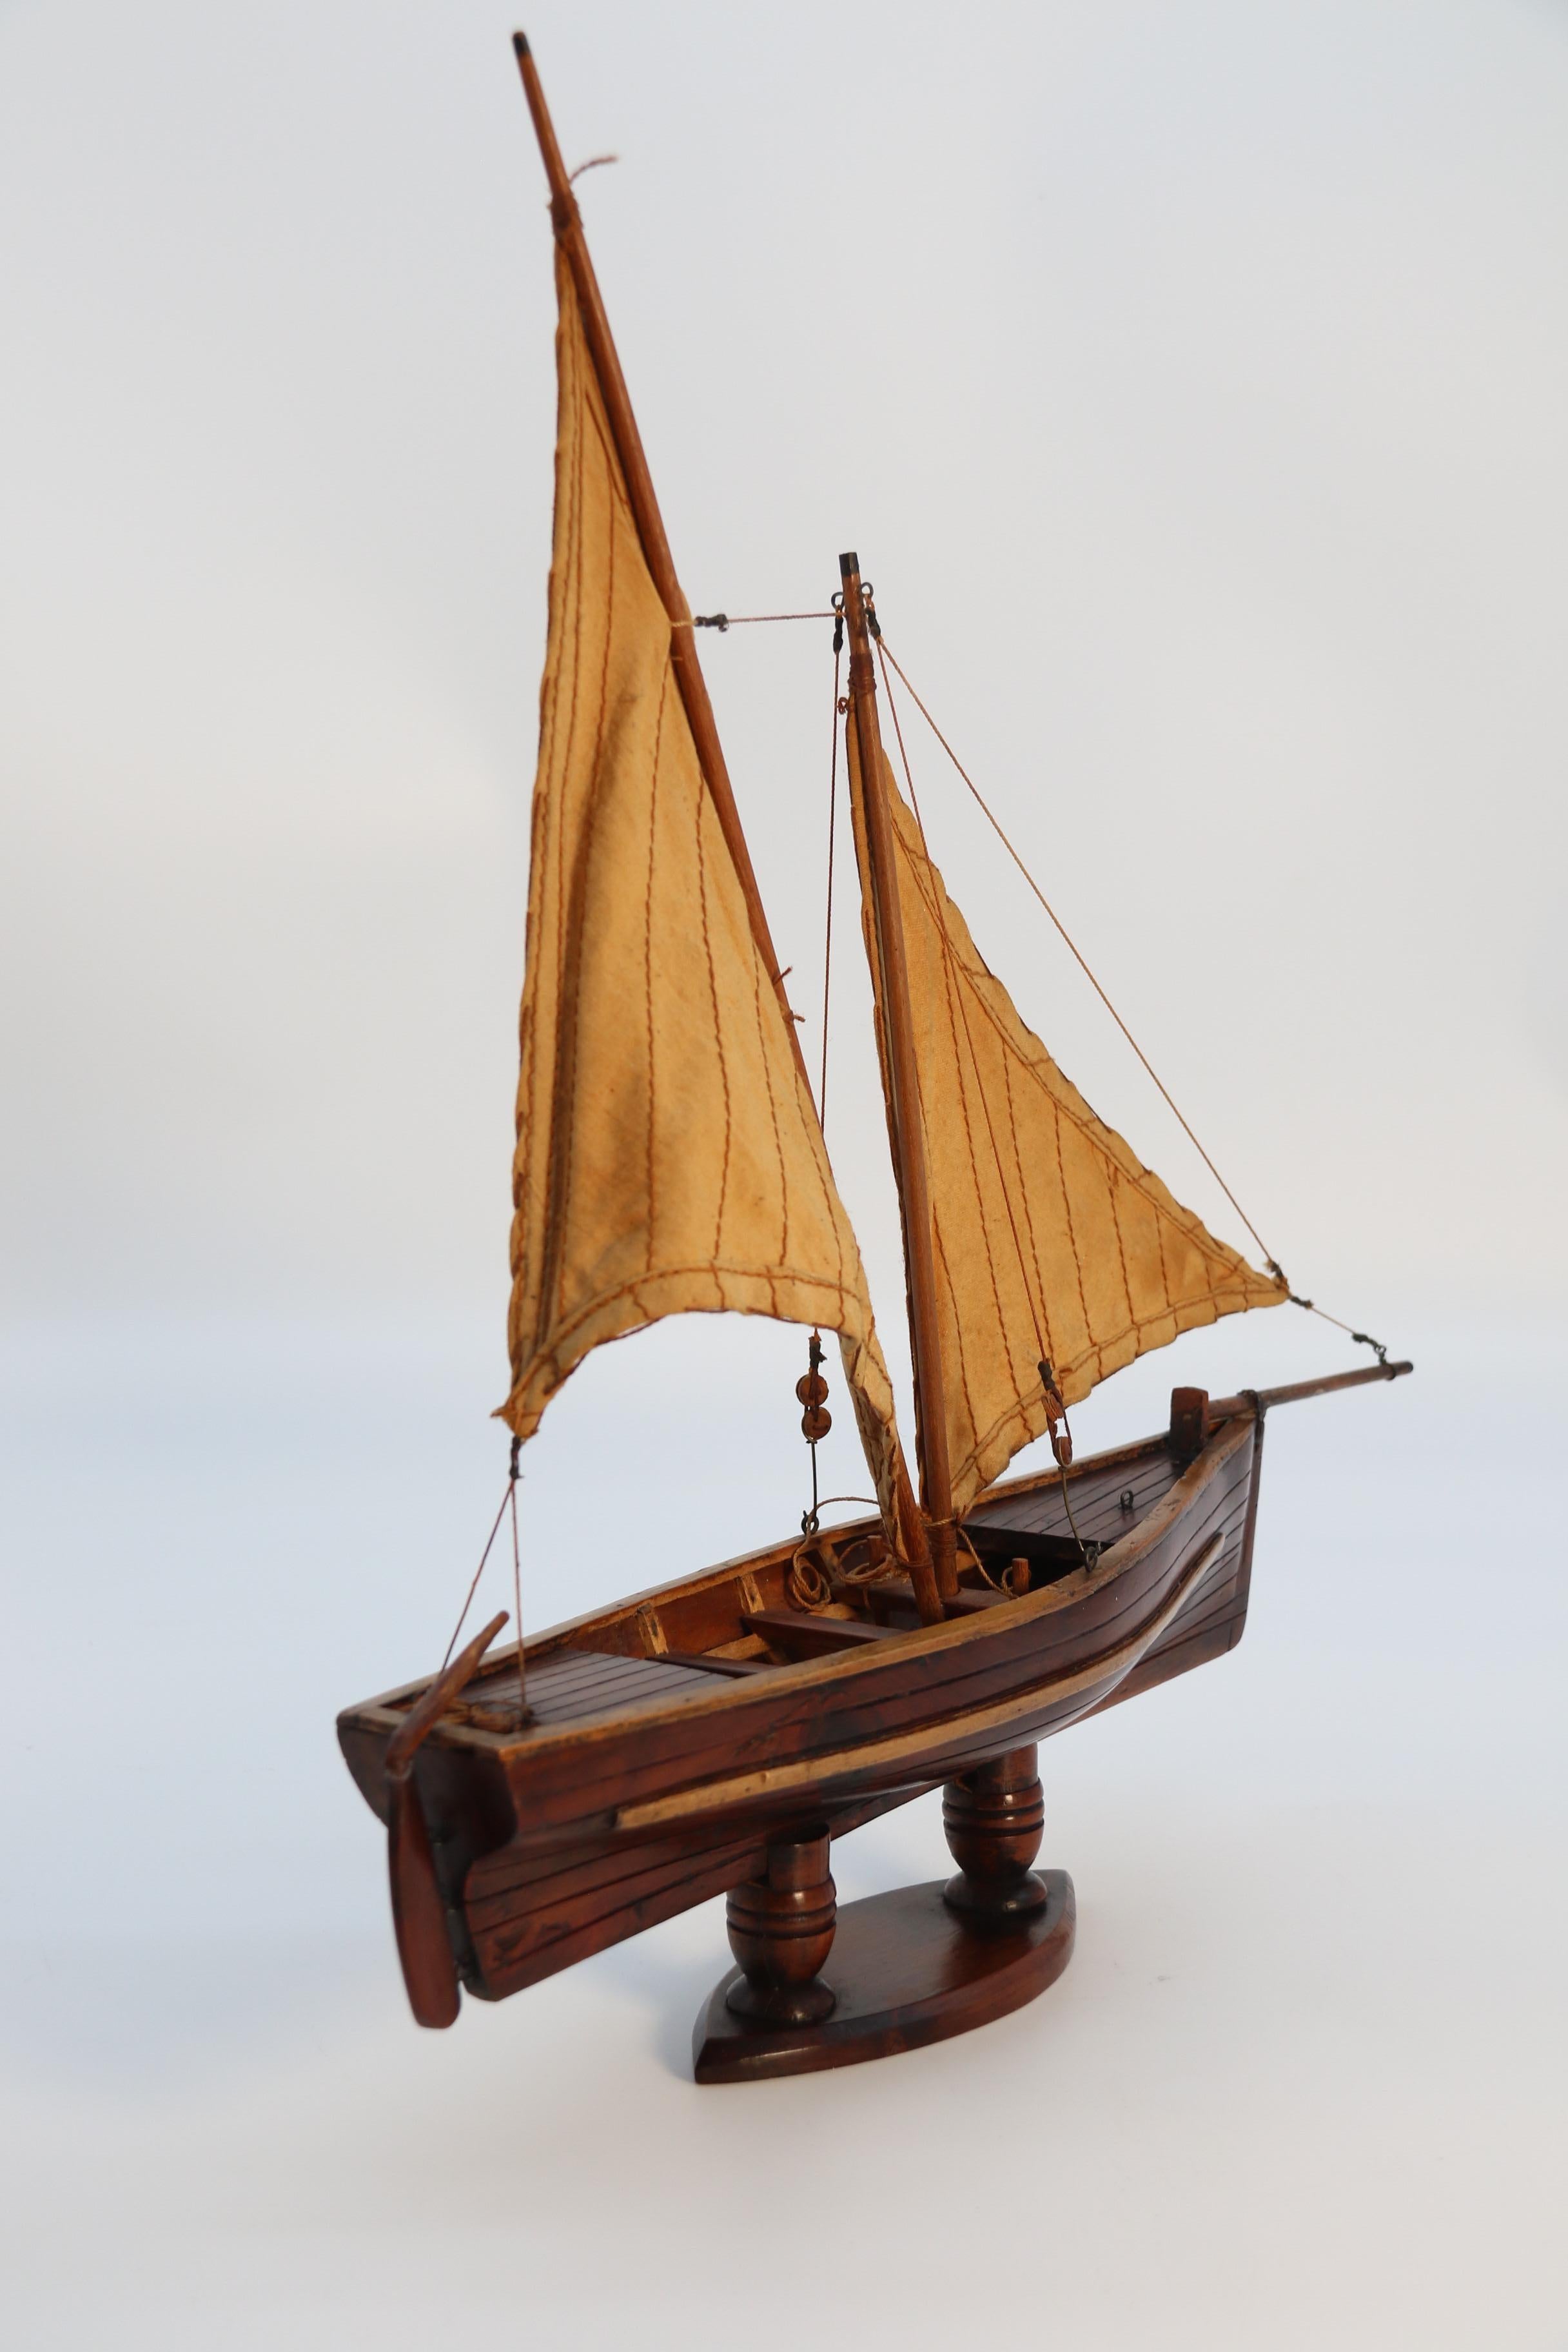 Yew English handmade yew wood model of 19th century sailing boat, circa 1900